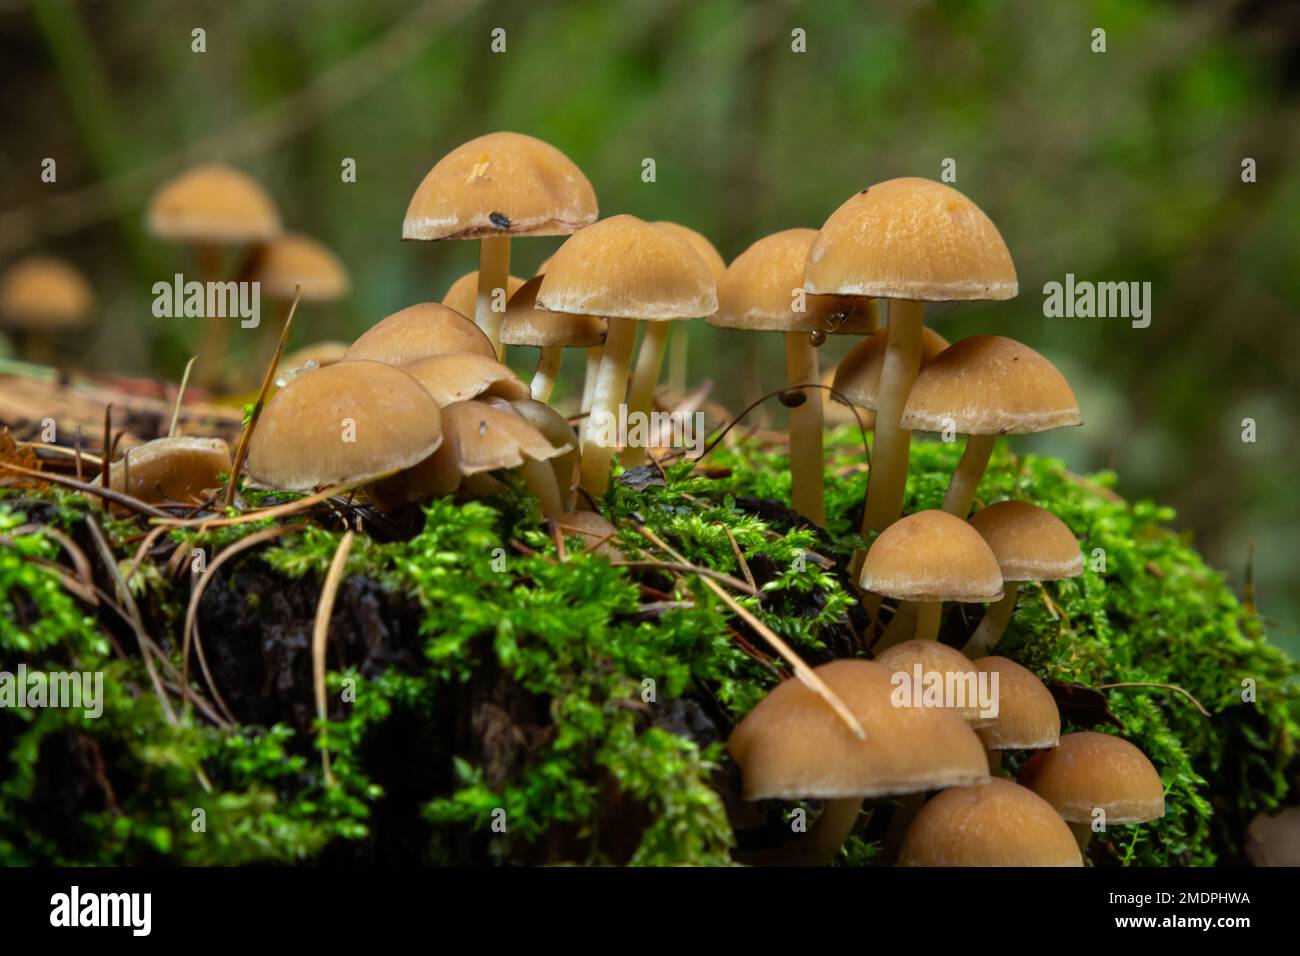 Mushrooms group Kuehneromyces mutabilis on a tree stump. Stock Photo